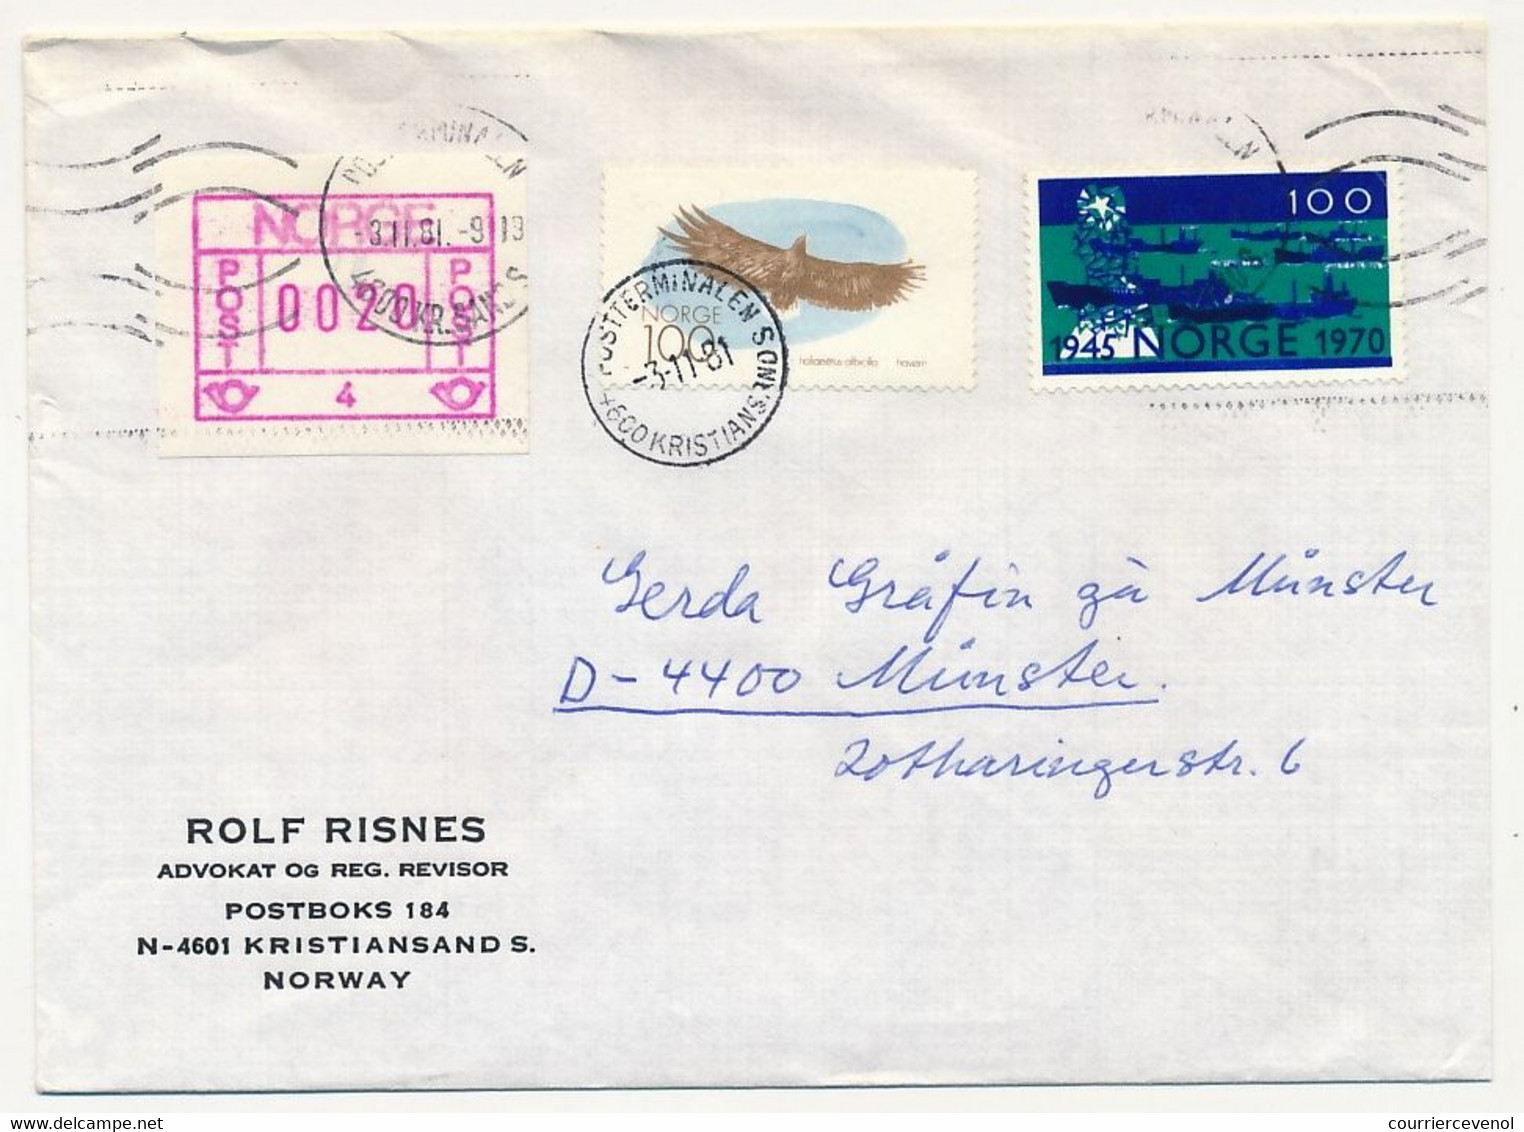 NORVEGE - Lot 9 enveloppes diverses, affranchissements composés avec étiquette ATM, 1981